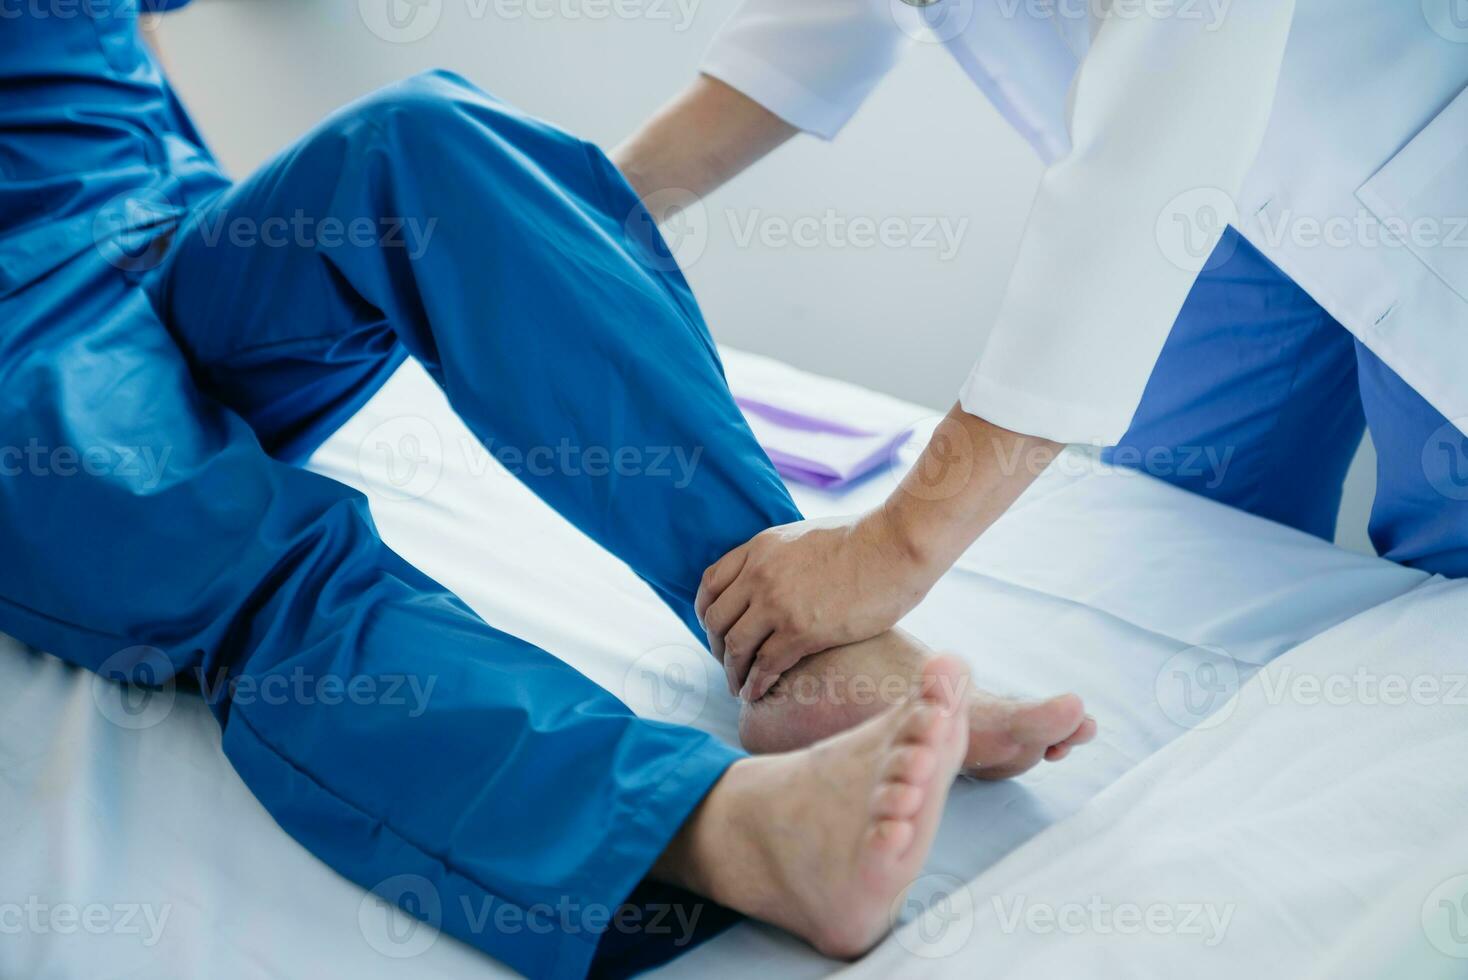 fisioterapeuta Ayudar paciente mientras extensión su pierna en cama en clínica foto